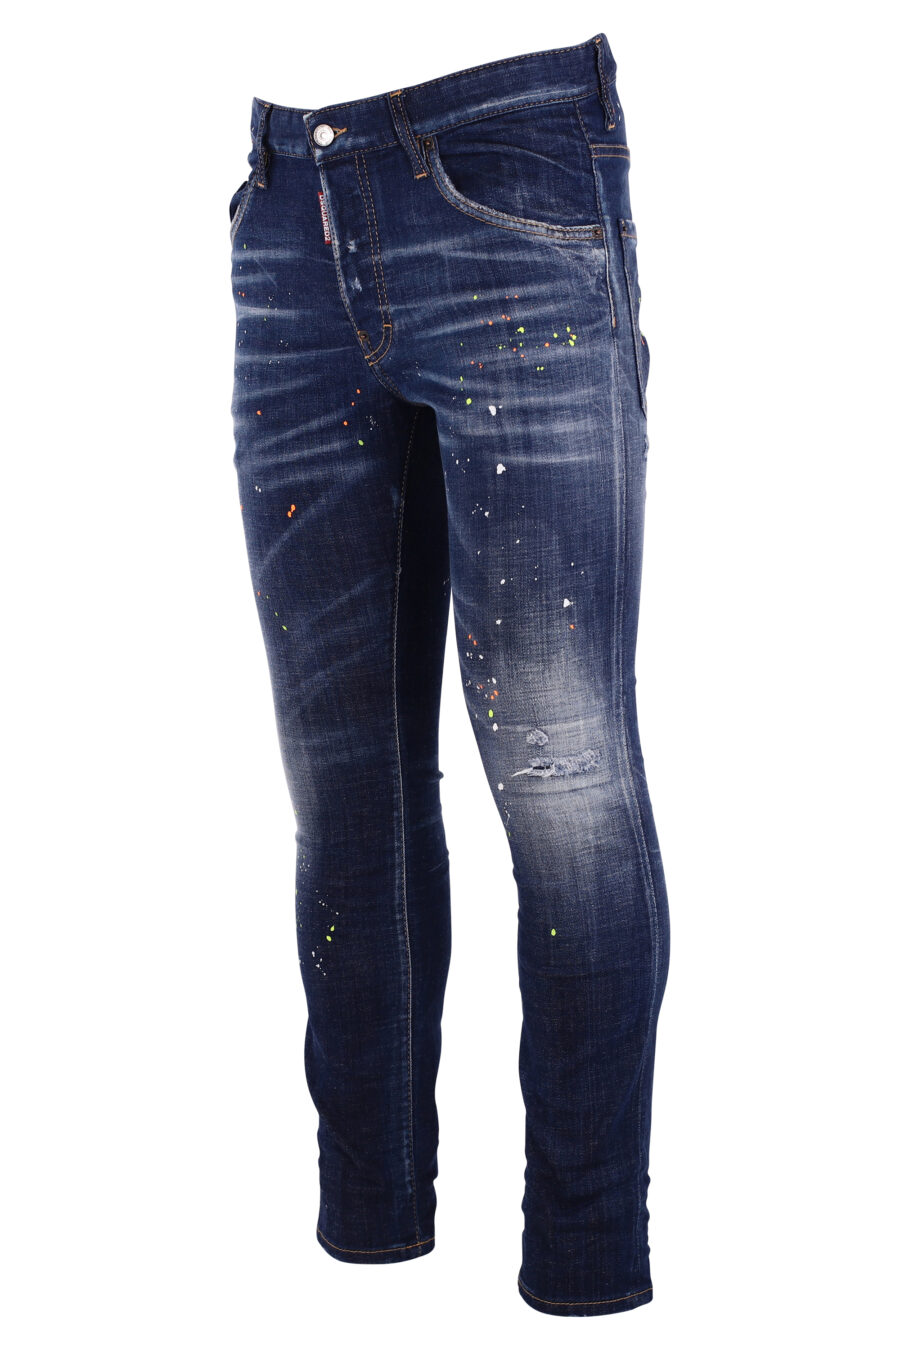 Pantalón vaquero "skater jean" azul con splash pintura blanca - IMG 8994